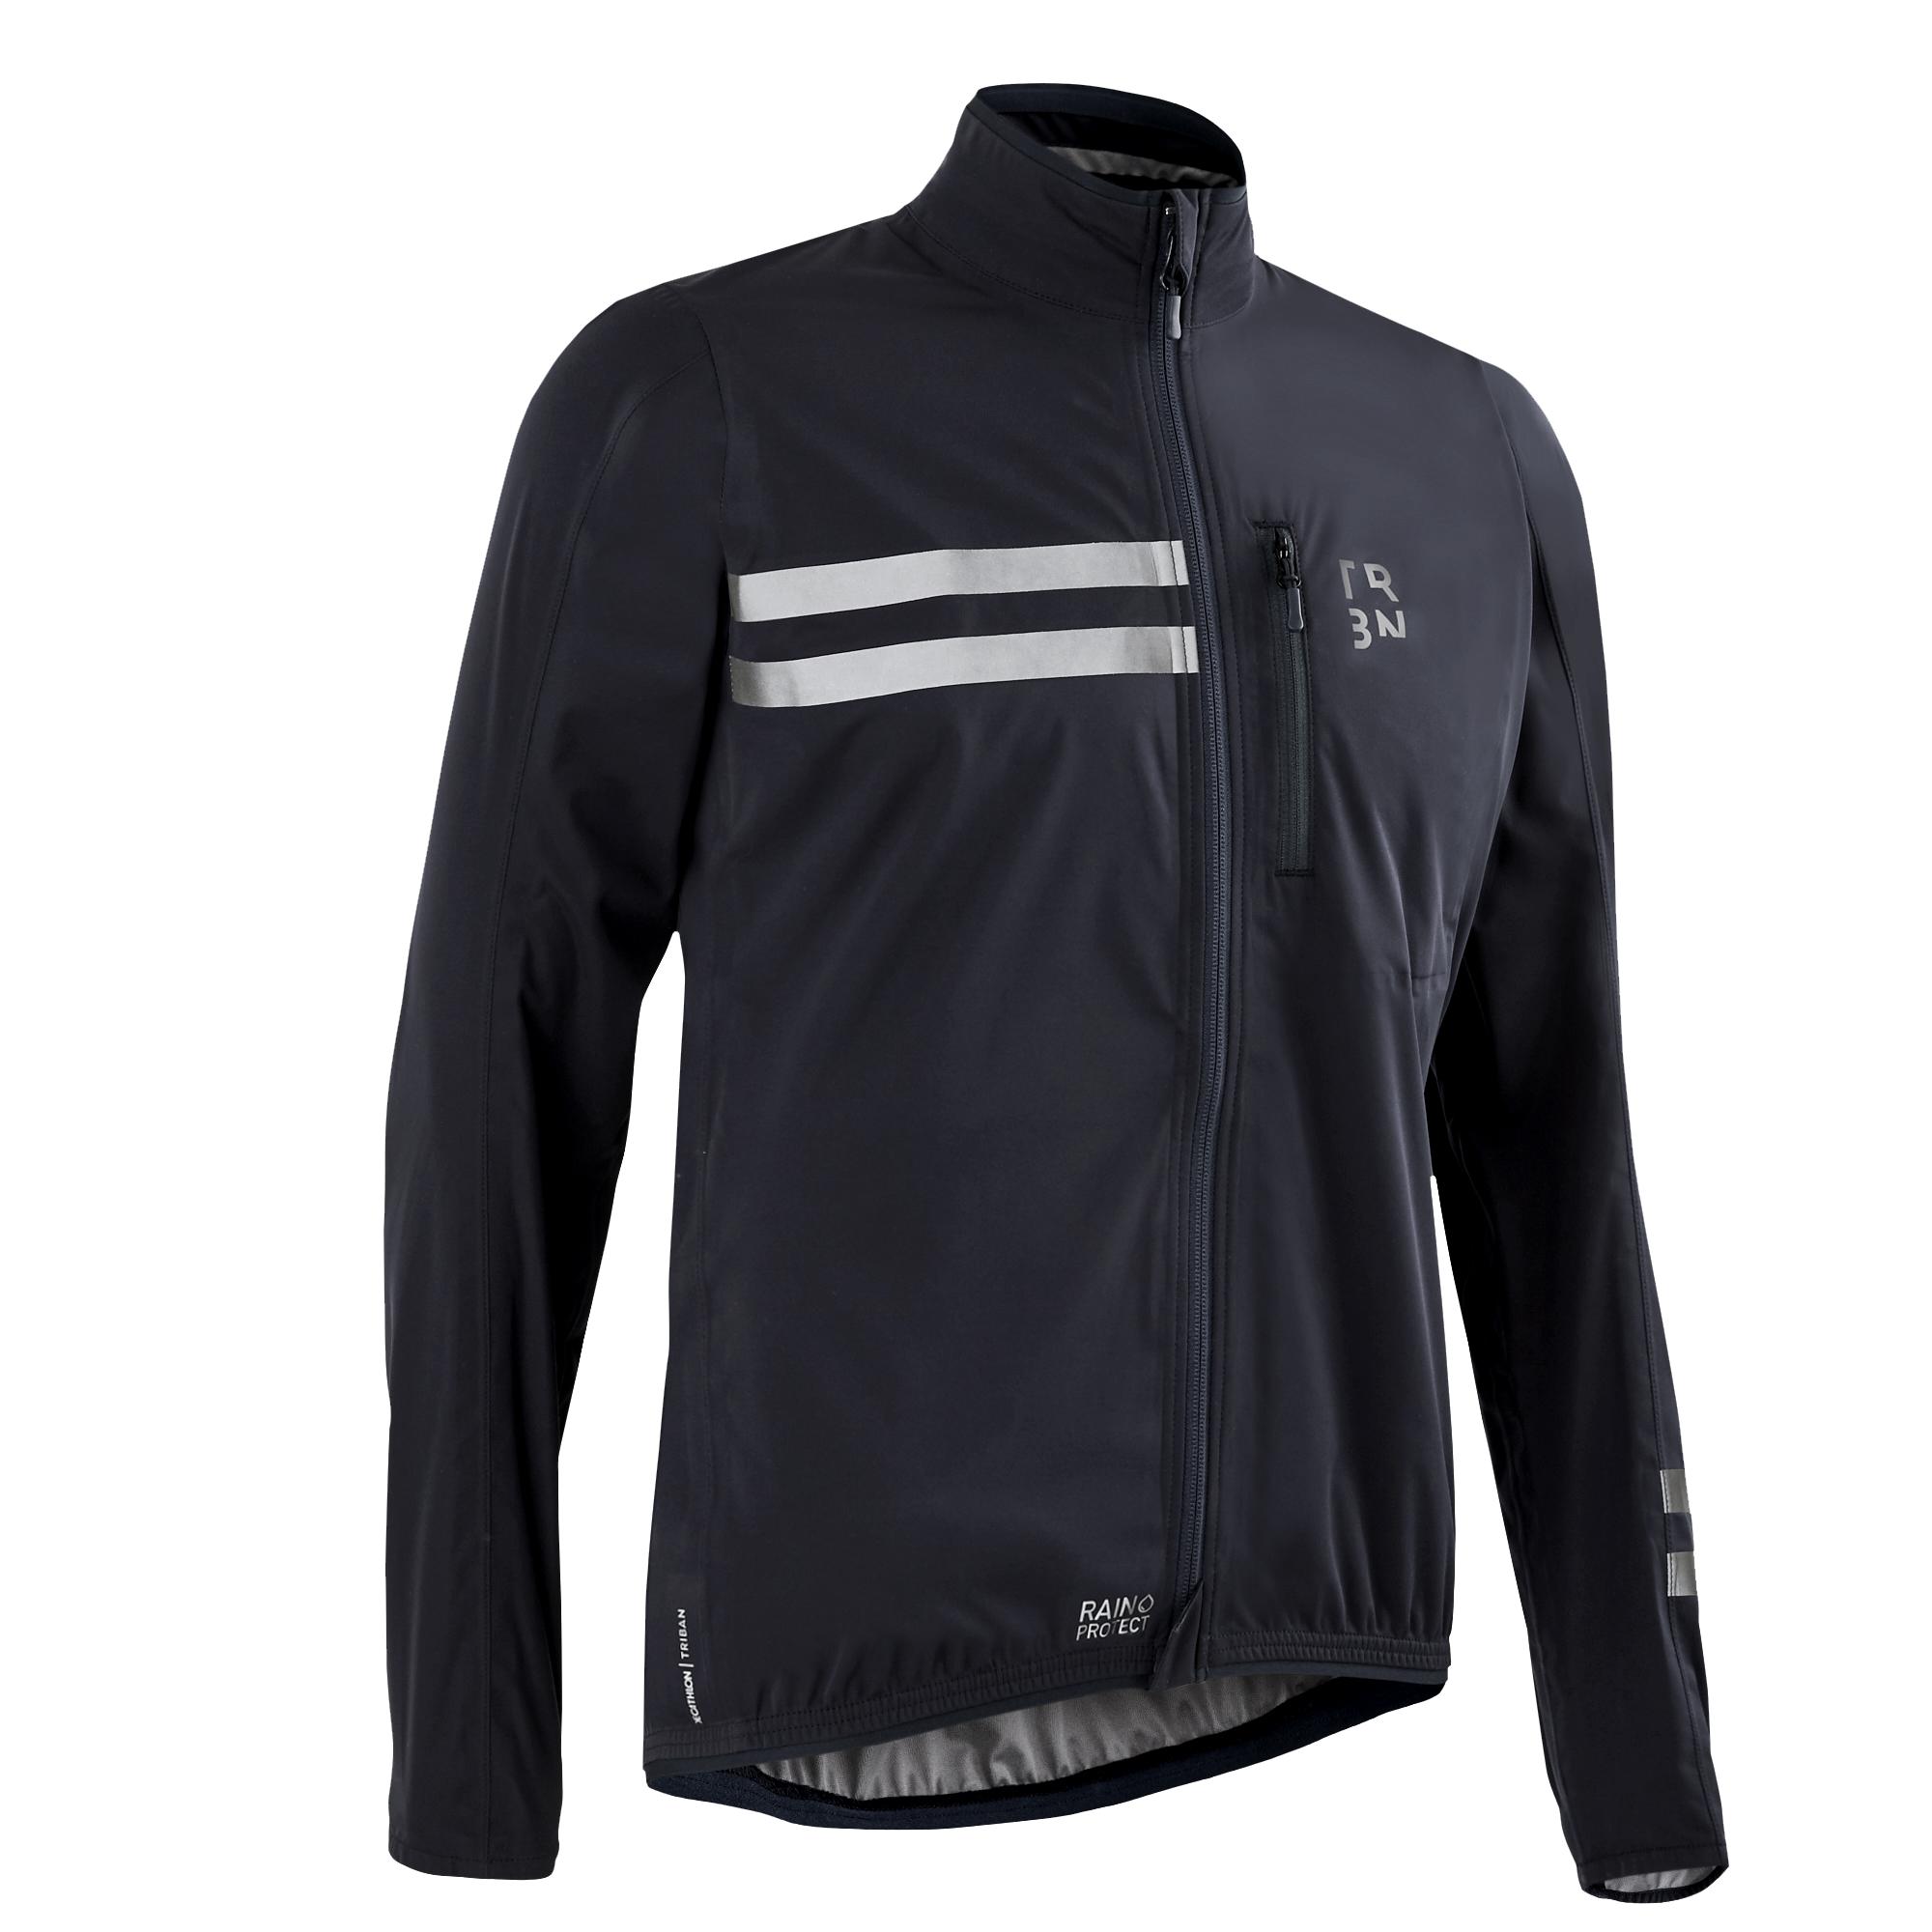 VAN RYSEL Men's Long-Sleeved Showerproof Road Cycling Jacket RC 500 - Black